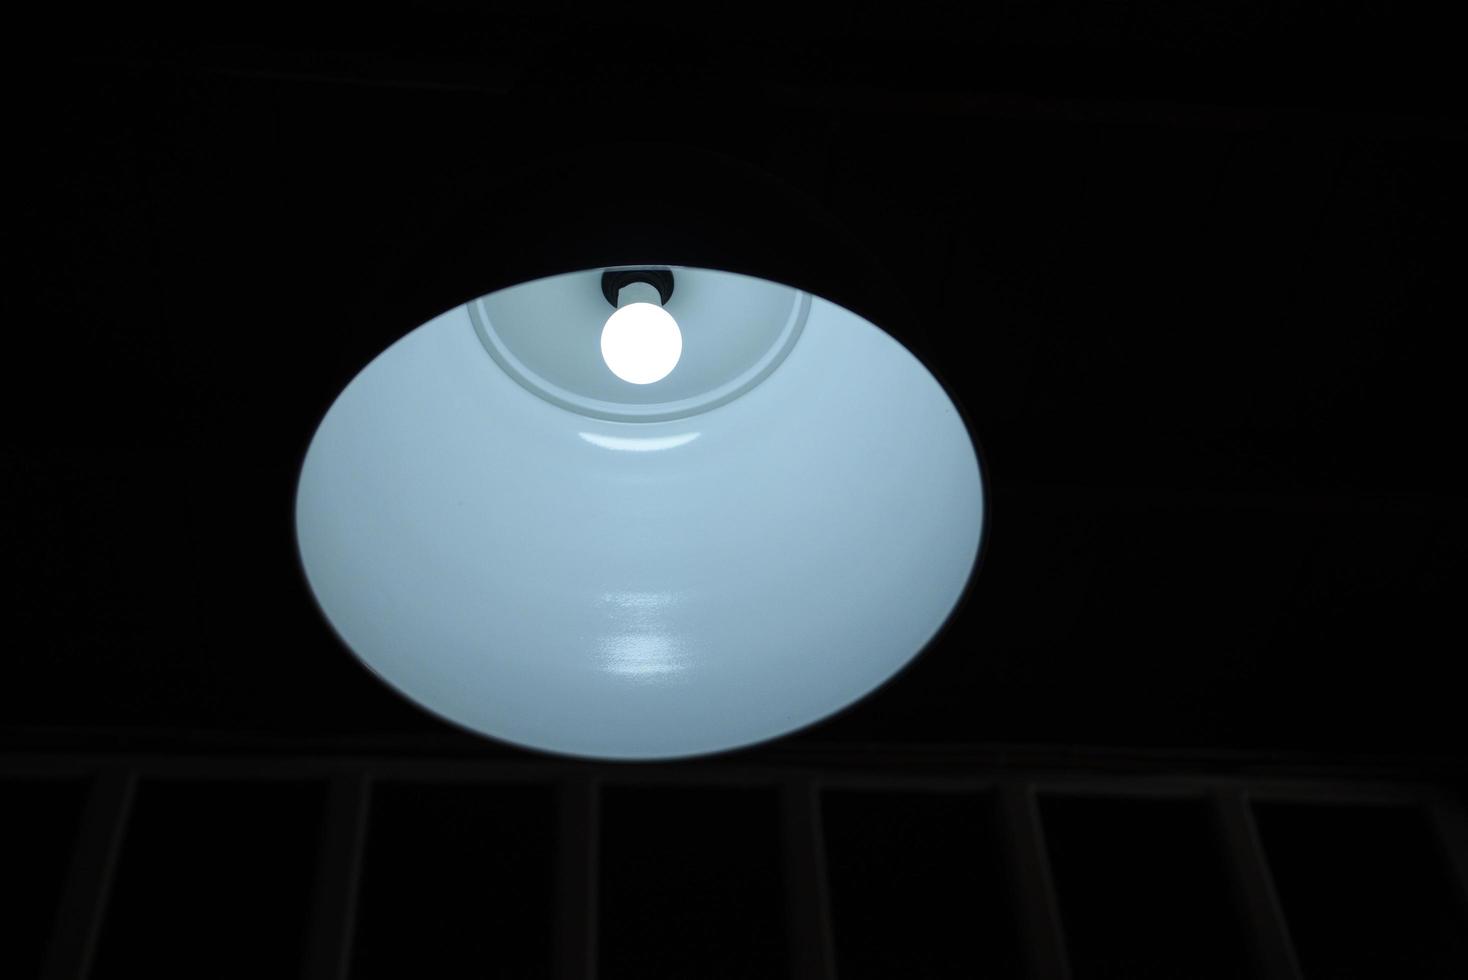 equipo eléctrico de techo de lámpara - lámpara oscura con una amplia fuente de luz de diseño de metal industrial iluminación industrial interior foto